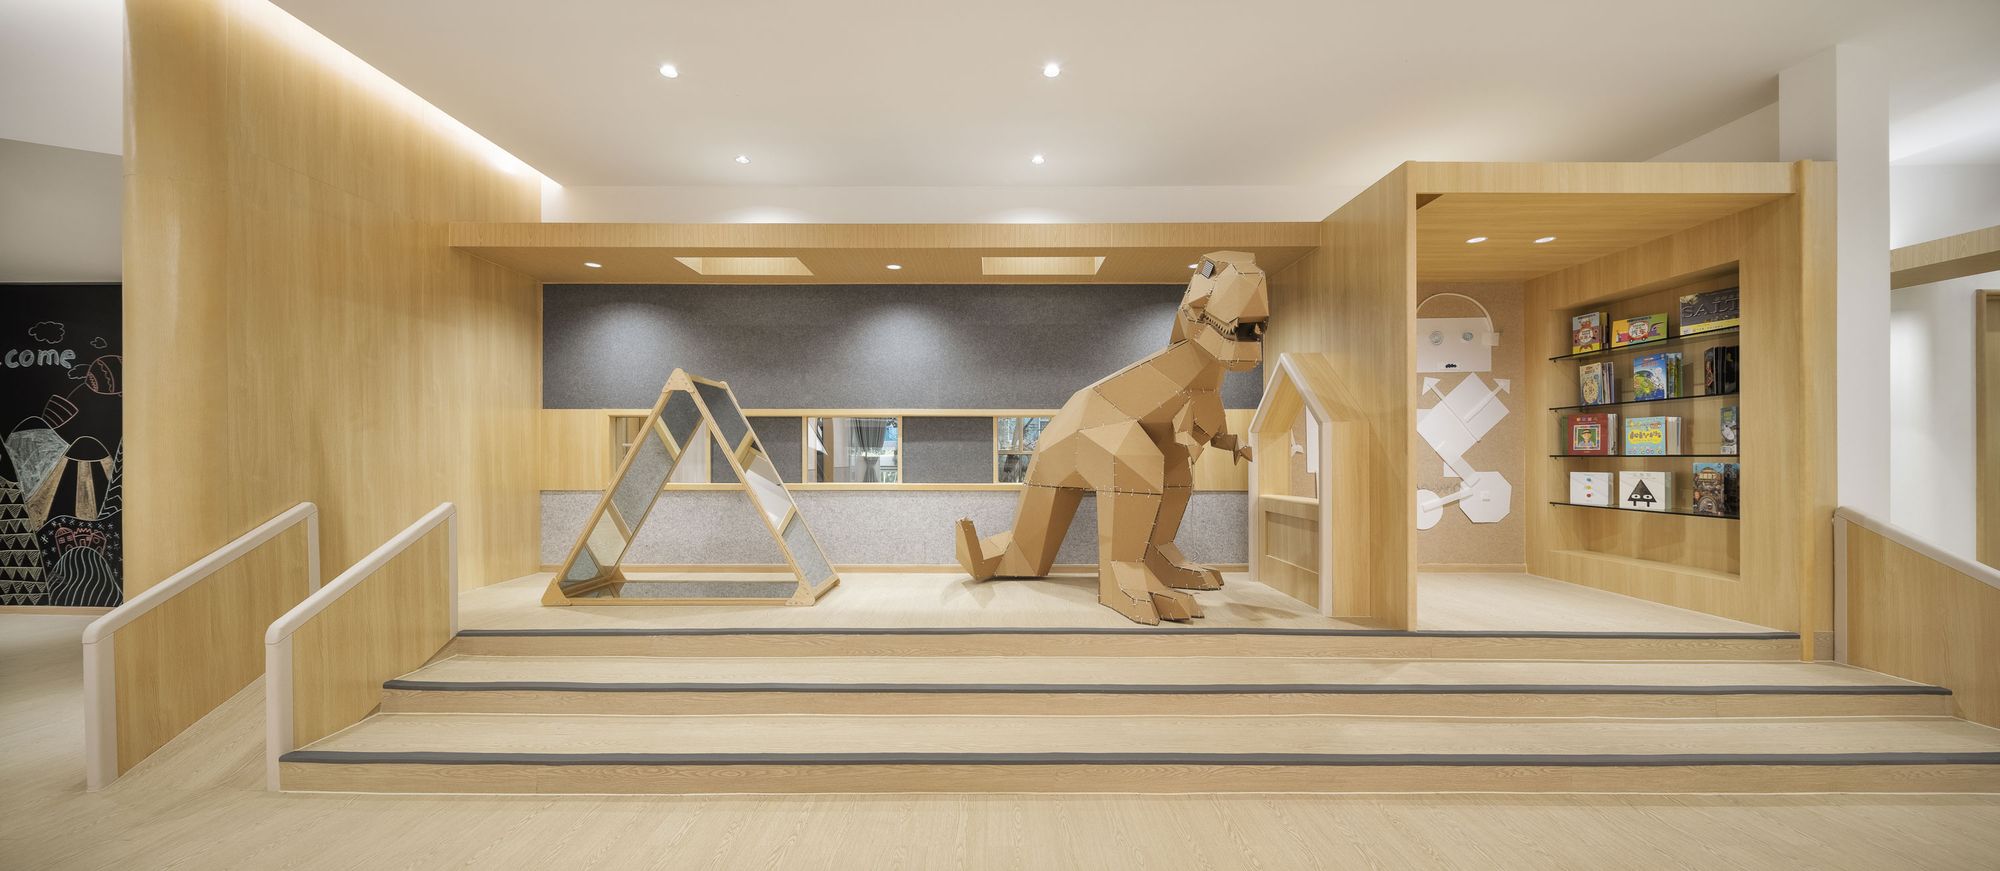 图片[11]|皇冠梦想国际幼儿园|ART-Arrakis | 建筑室内设计的创新与灵感